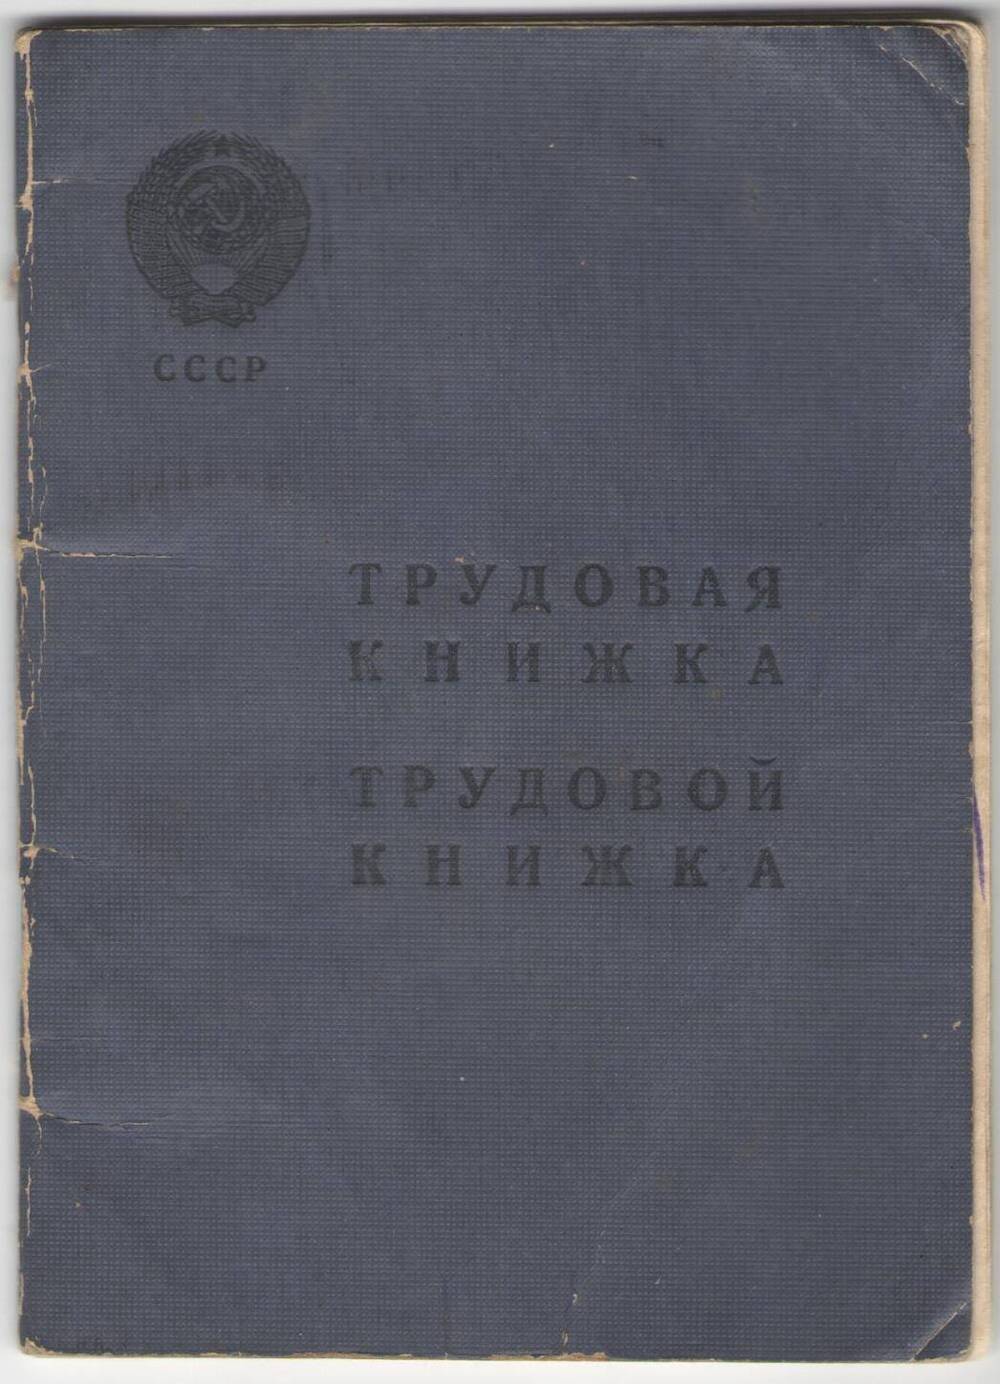 Книжка трудовая Булдаковой Марии Михайловны (Участница Великой Отечественной войны). Выдана 11 мая 1959 года.